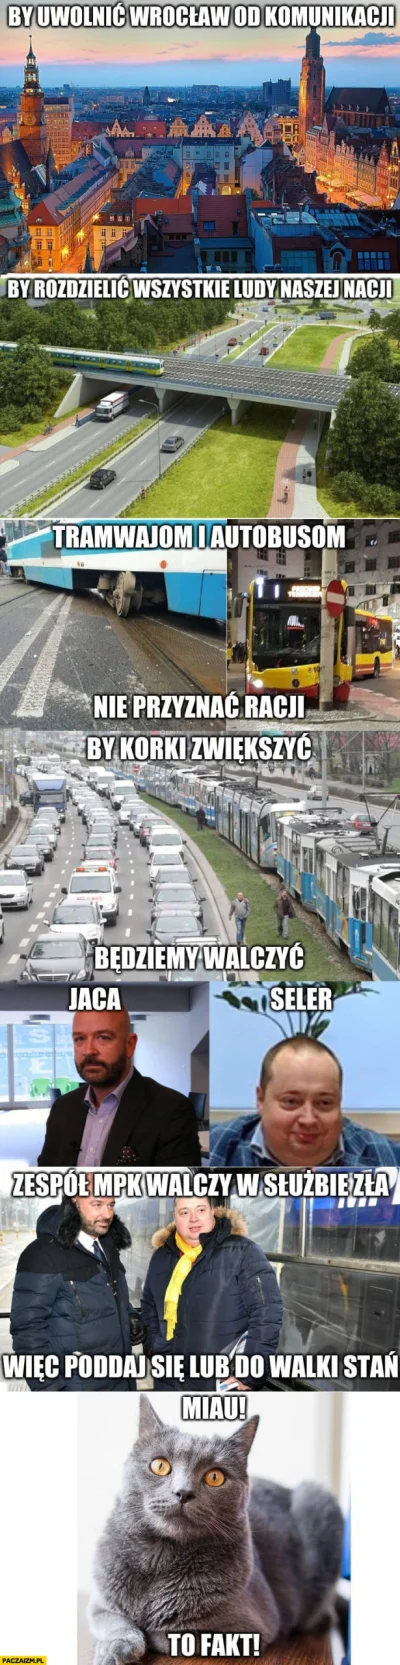 prymus14 - Mowa coś o Wrocławskim MPK? Musi być jedyny słuszny mem ( ͡° ͜ʖ ͡°)
Serio...